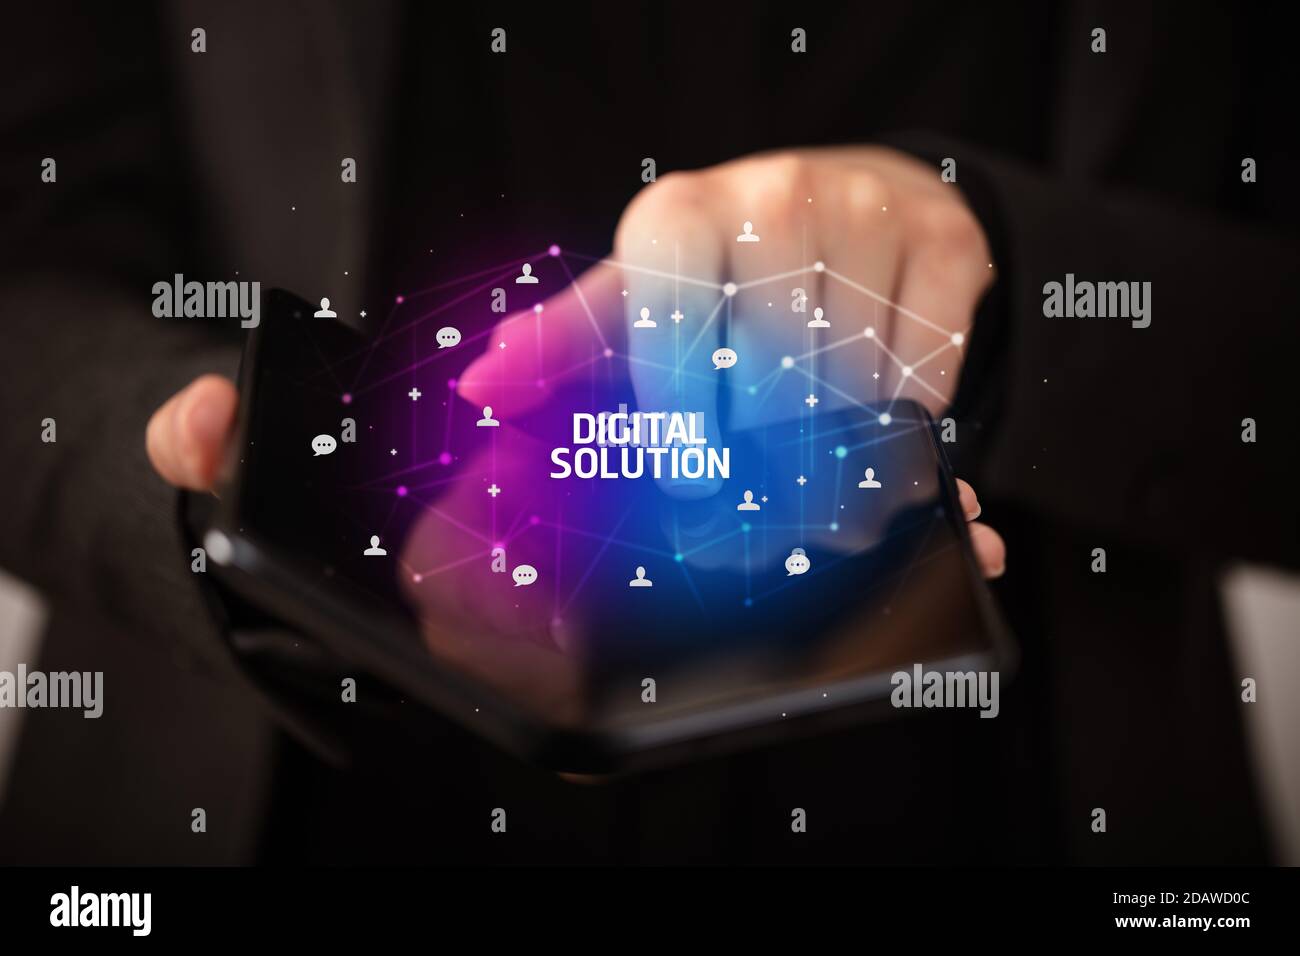 Empresario sosteniendo un smartphone plegable con solución digital inscripción, nuevo concepto tecnológico Foto de stock